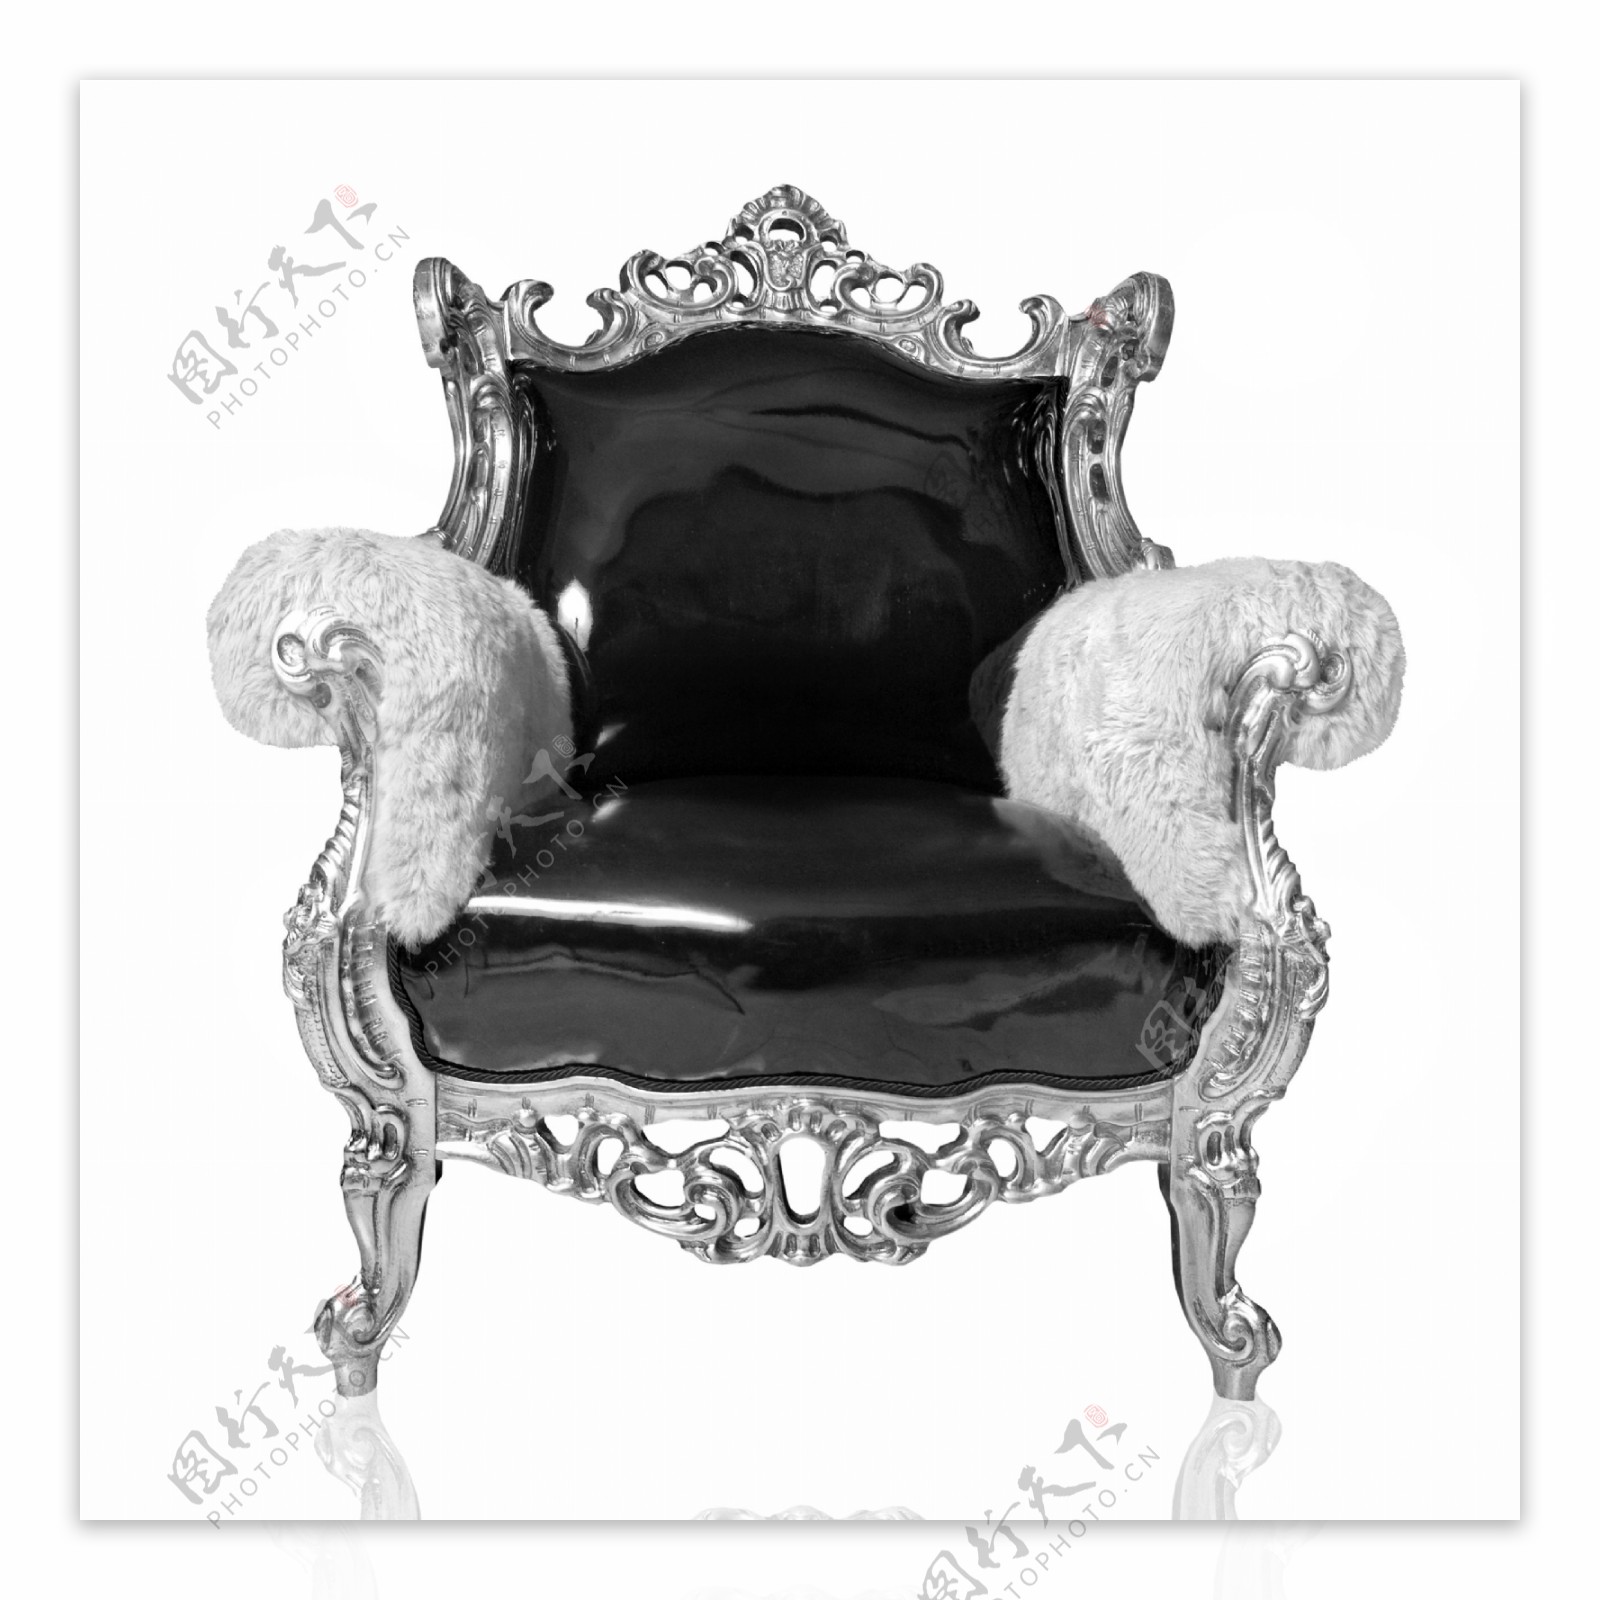 欧式沙发椅的黑白照片图片图片